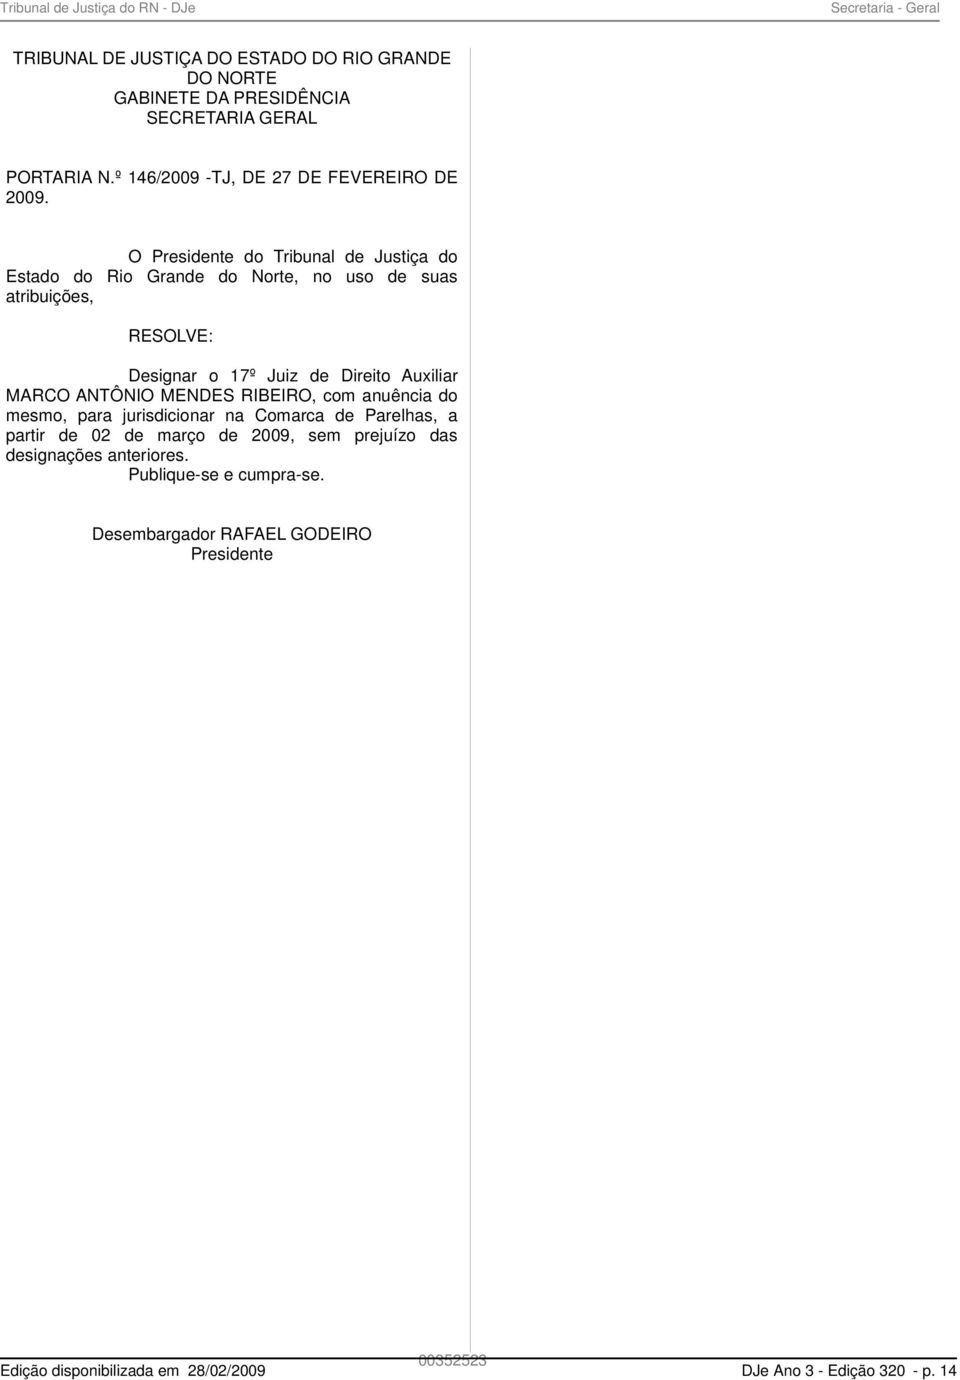 O Presidente do Tribunal de Justiça do Estado do Rio Grande do Norte, no uso de suas atribuições, RESOLVE: Designar o 17º Juiz de Direito Auxiliar MARCO